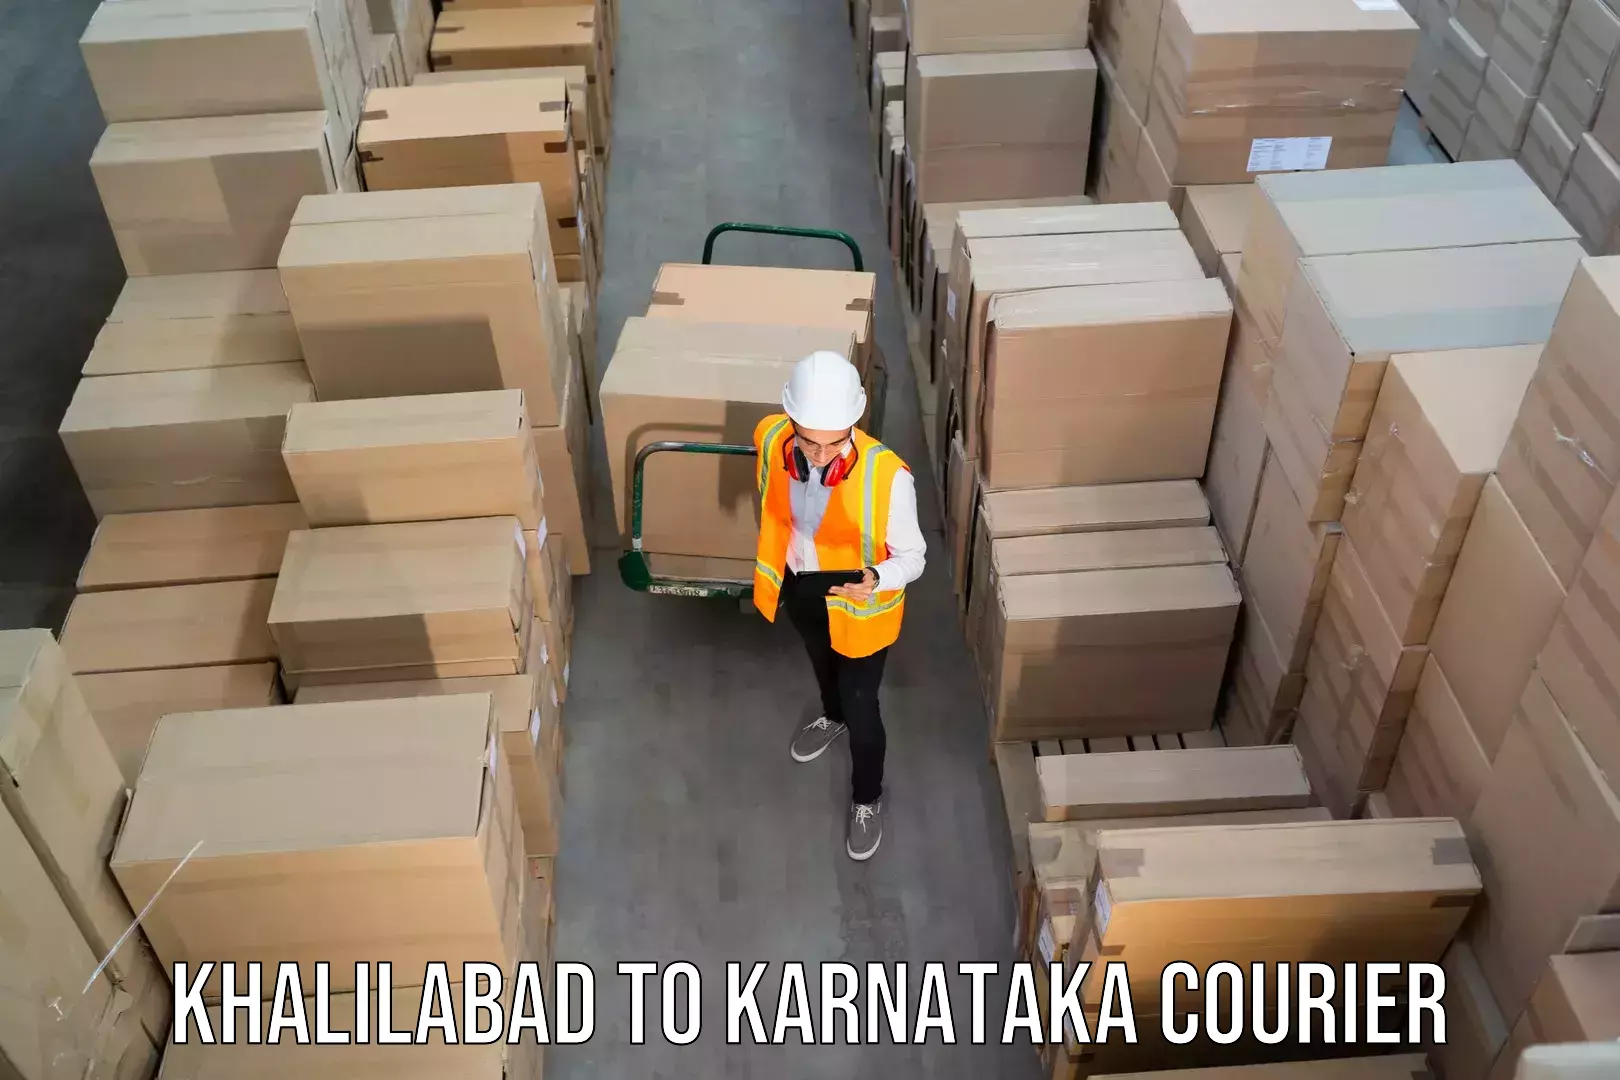 Global shipping networks Khalilabad to Banavara